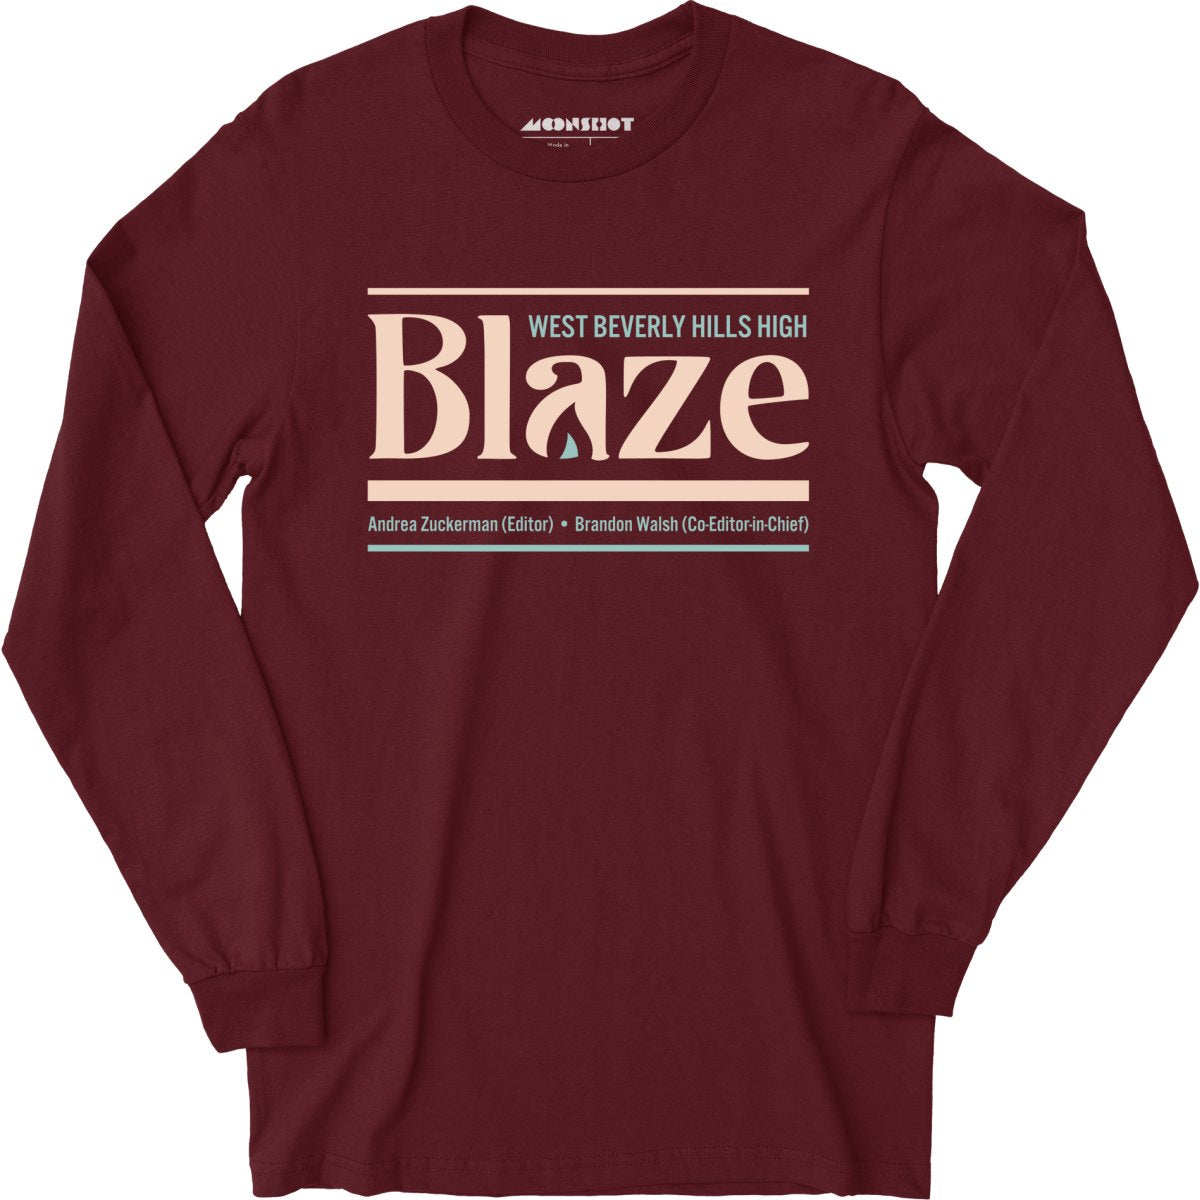 West Beverly Hills High Blaze Newspaper 90210 - Long Sleeve T-Shirt